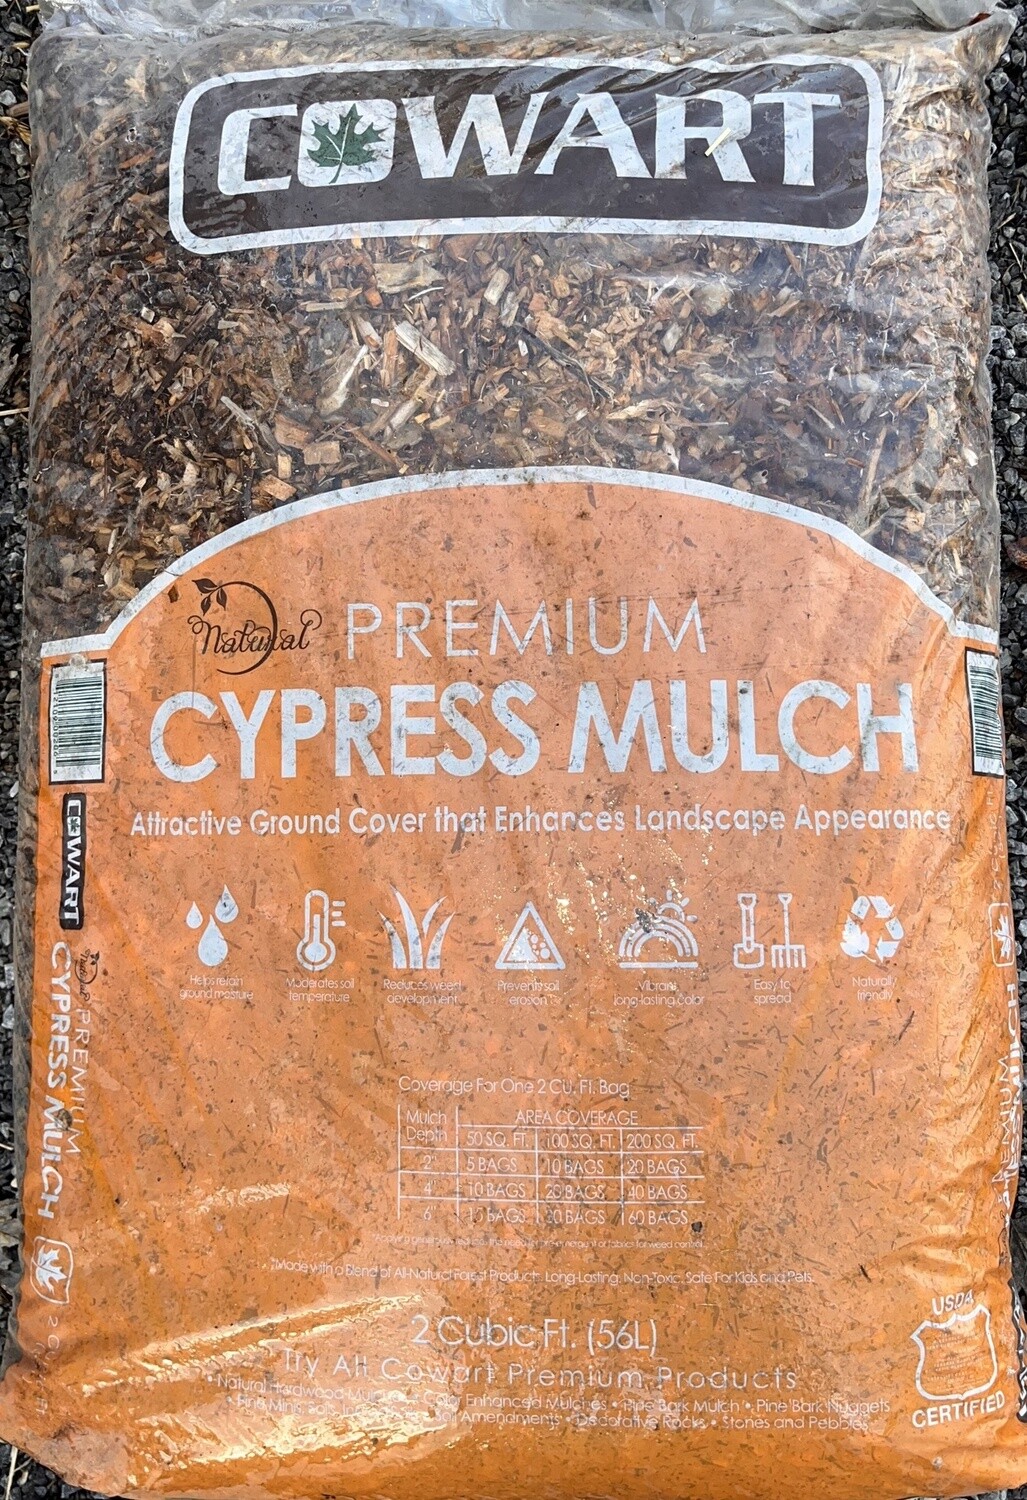 Bagged Cypress Mulch